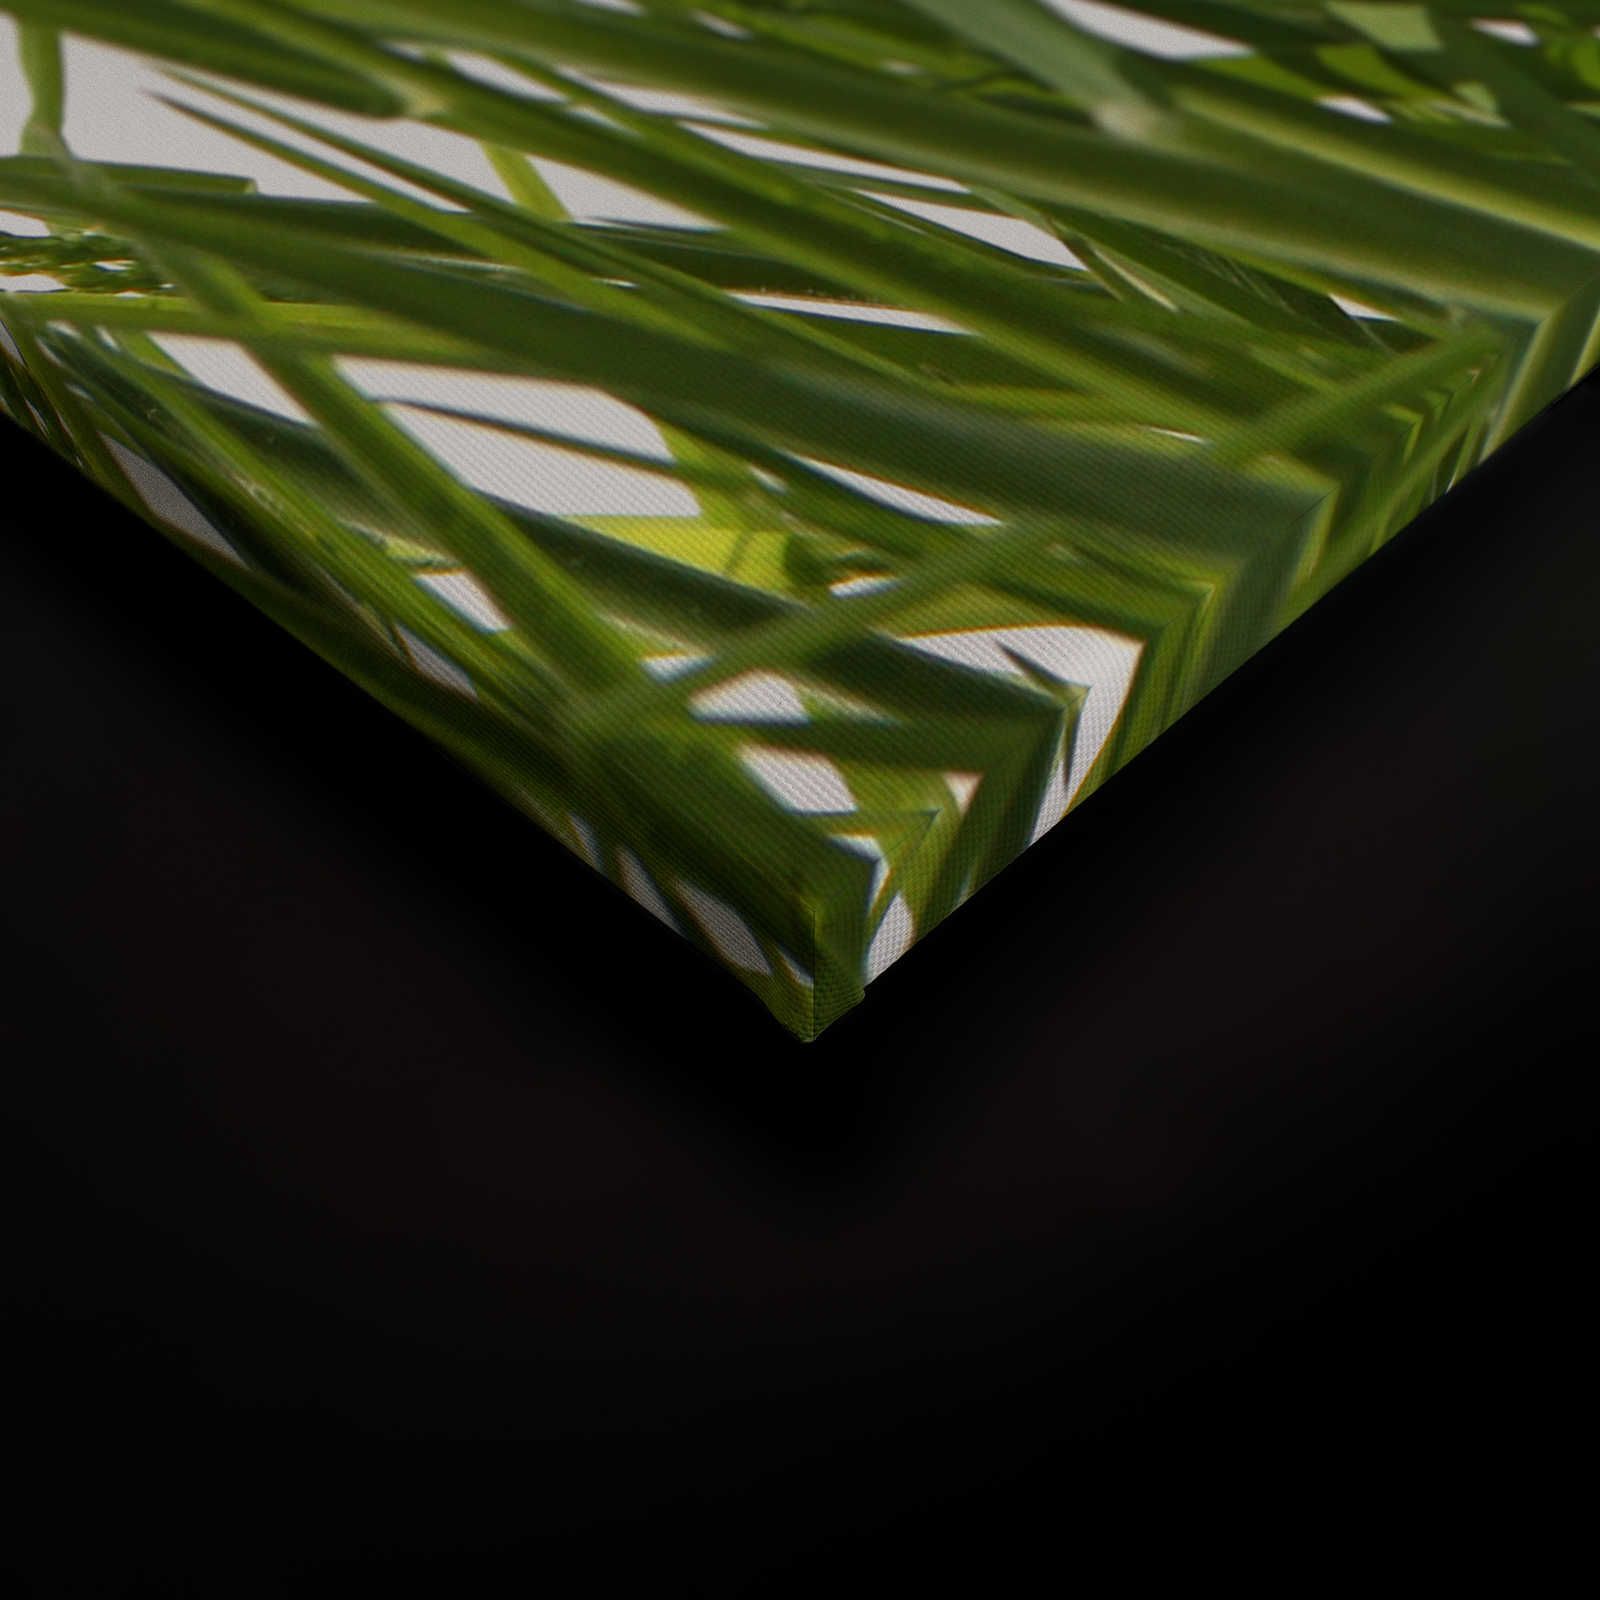             Leinwandbild Gräser Detail mit weißem Hintergrund – 0,90 m x 0,60 m
        